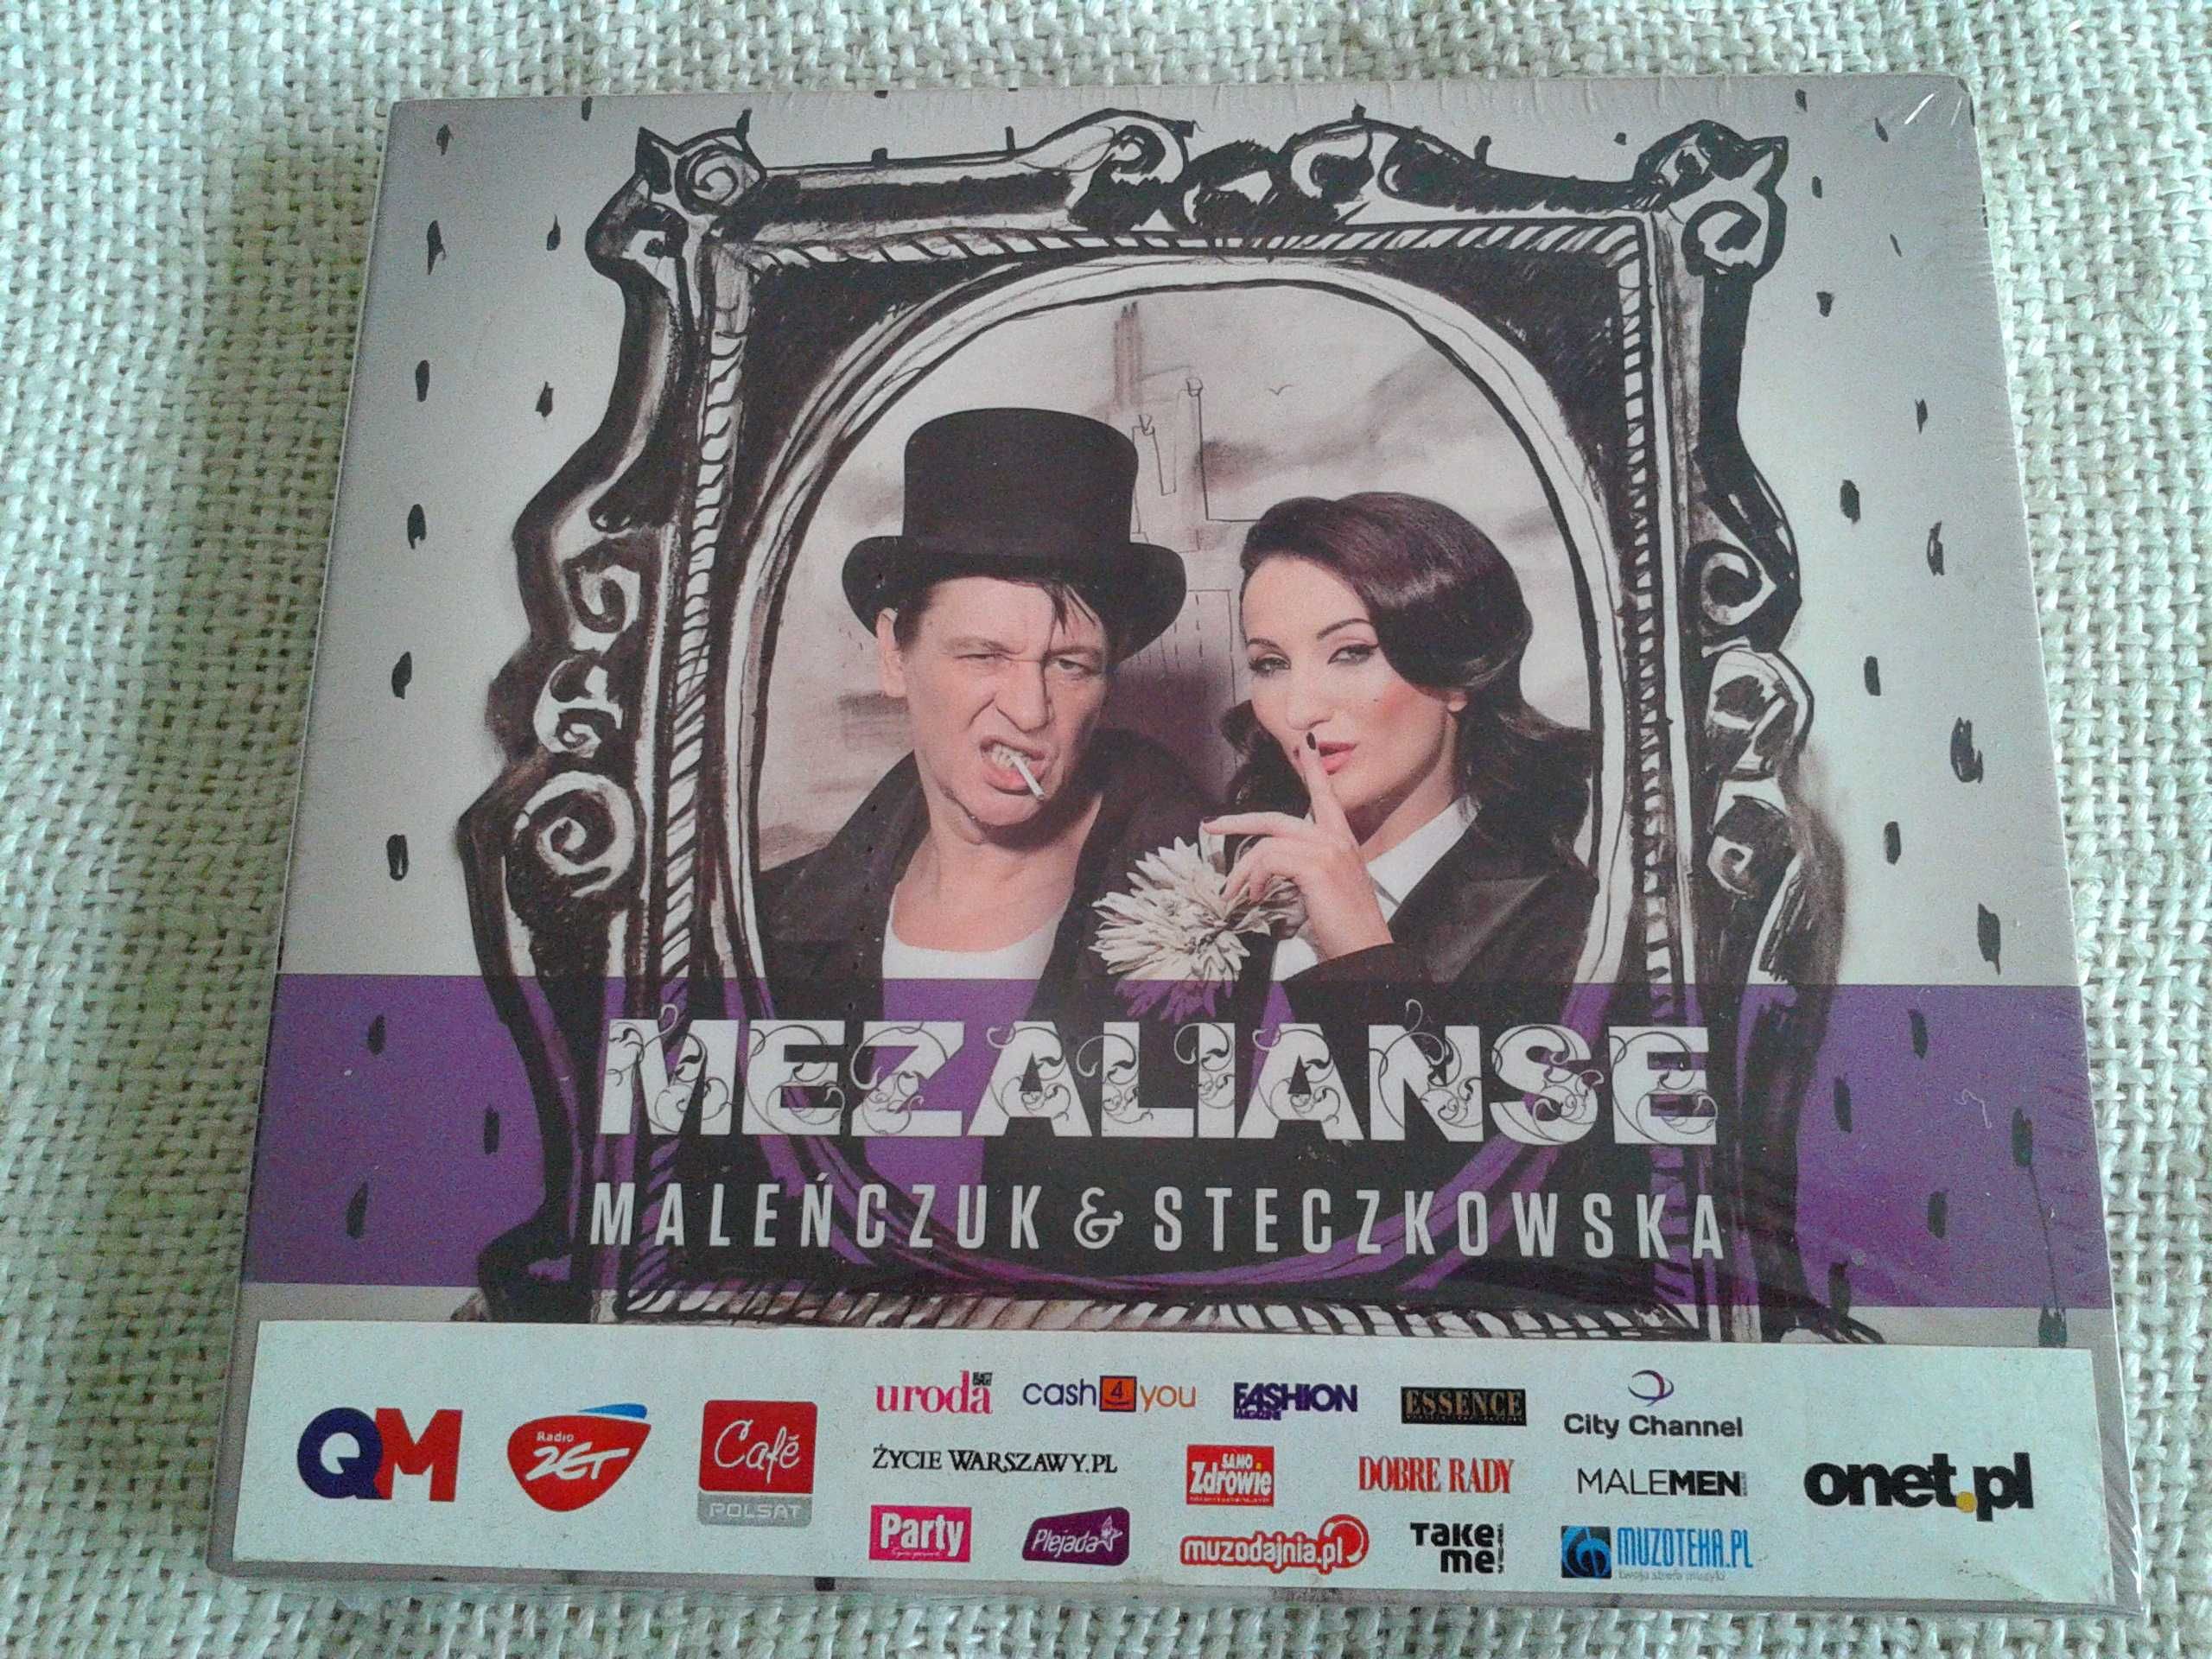 Maleńczuk & Steczkowska – Mezalianse  CD